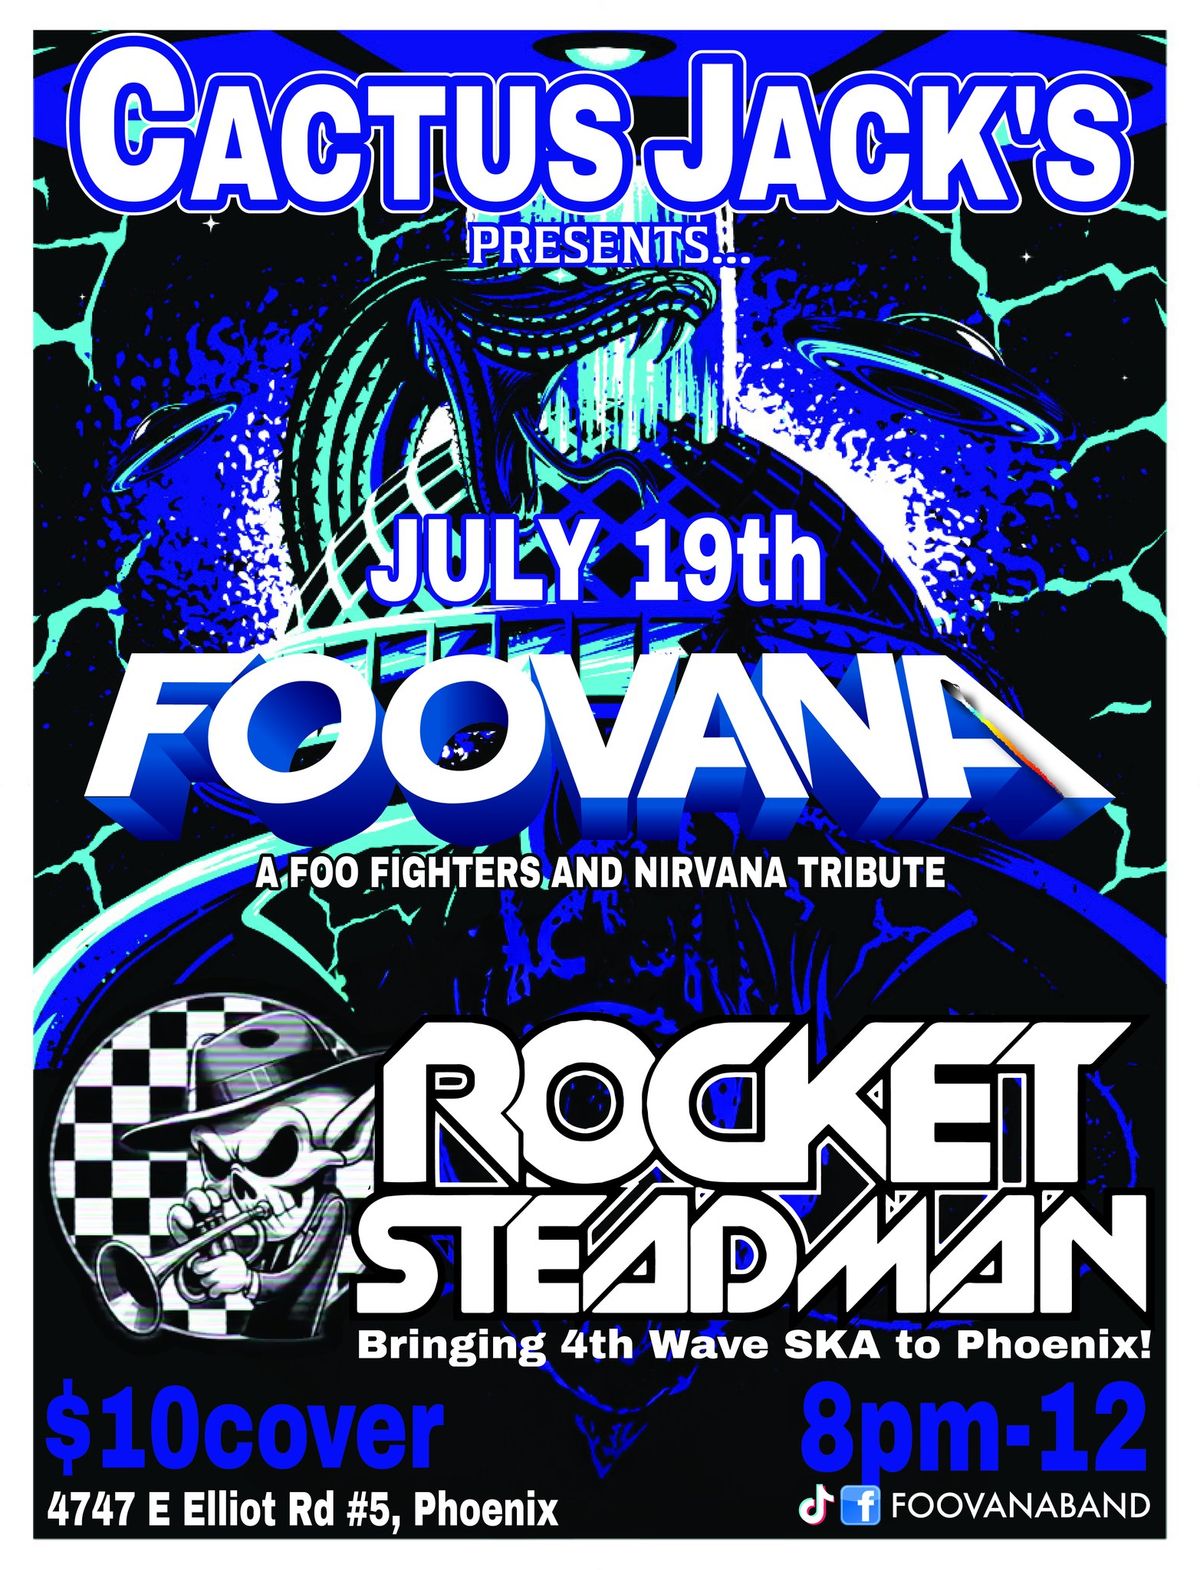 FooVana and Rocket Steadman @ Cactus Jack's